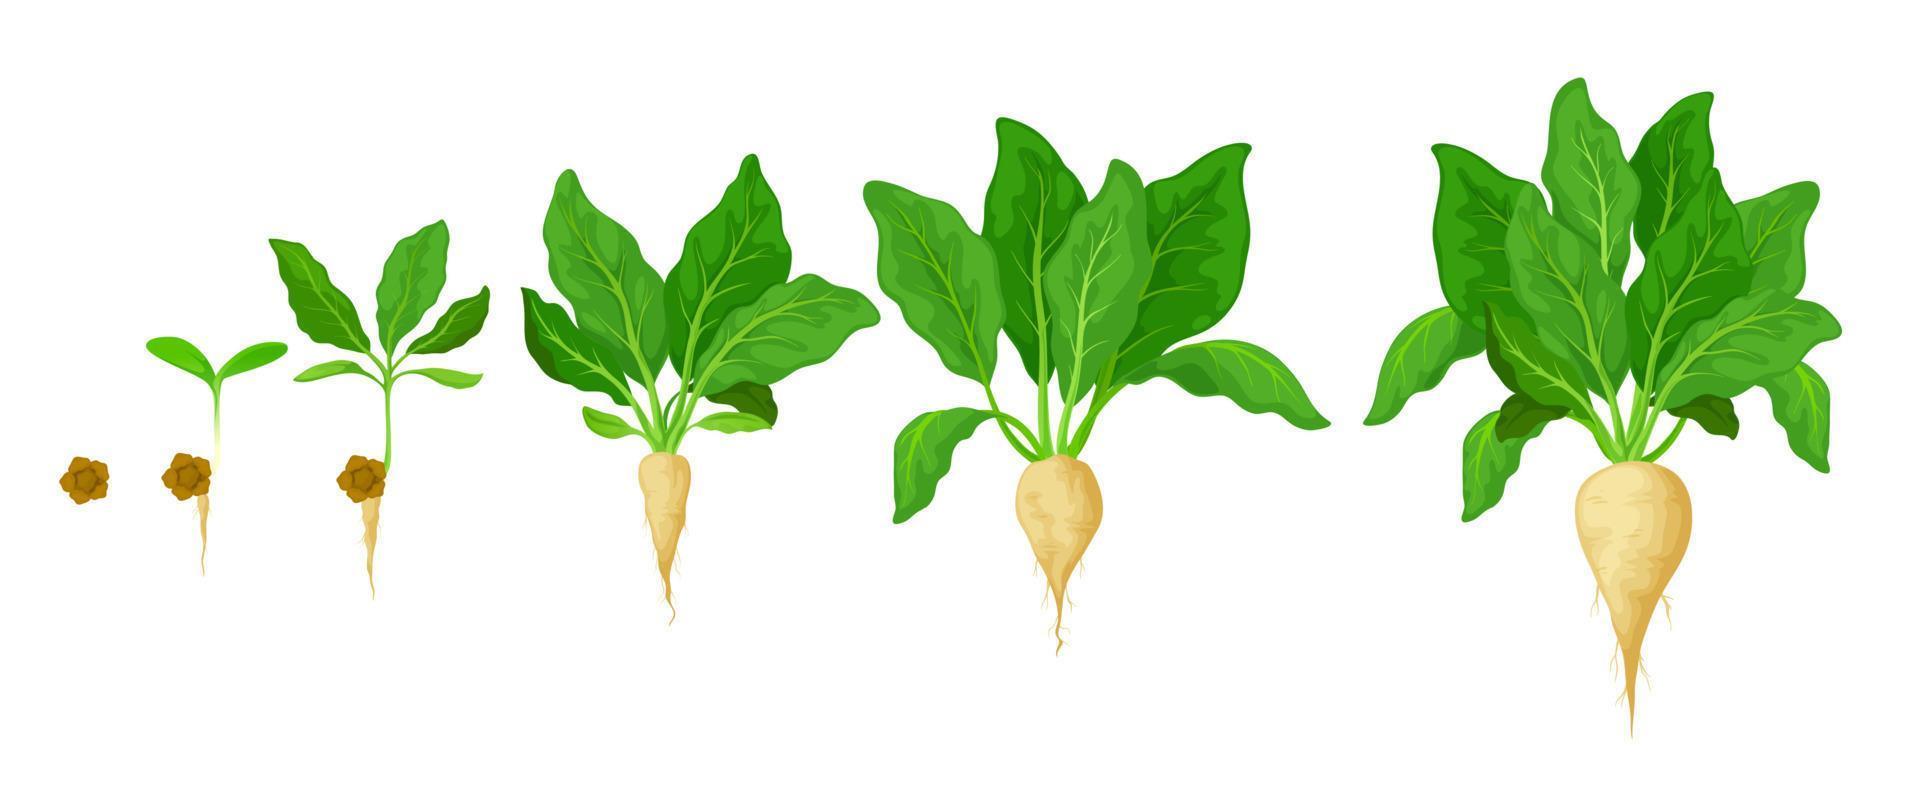 Zuckerrüben wachsen, Keimungsstadien von Gemüse vektor